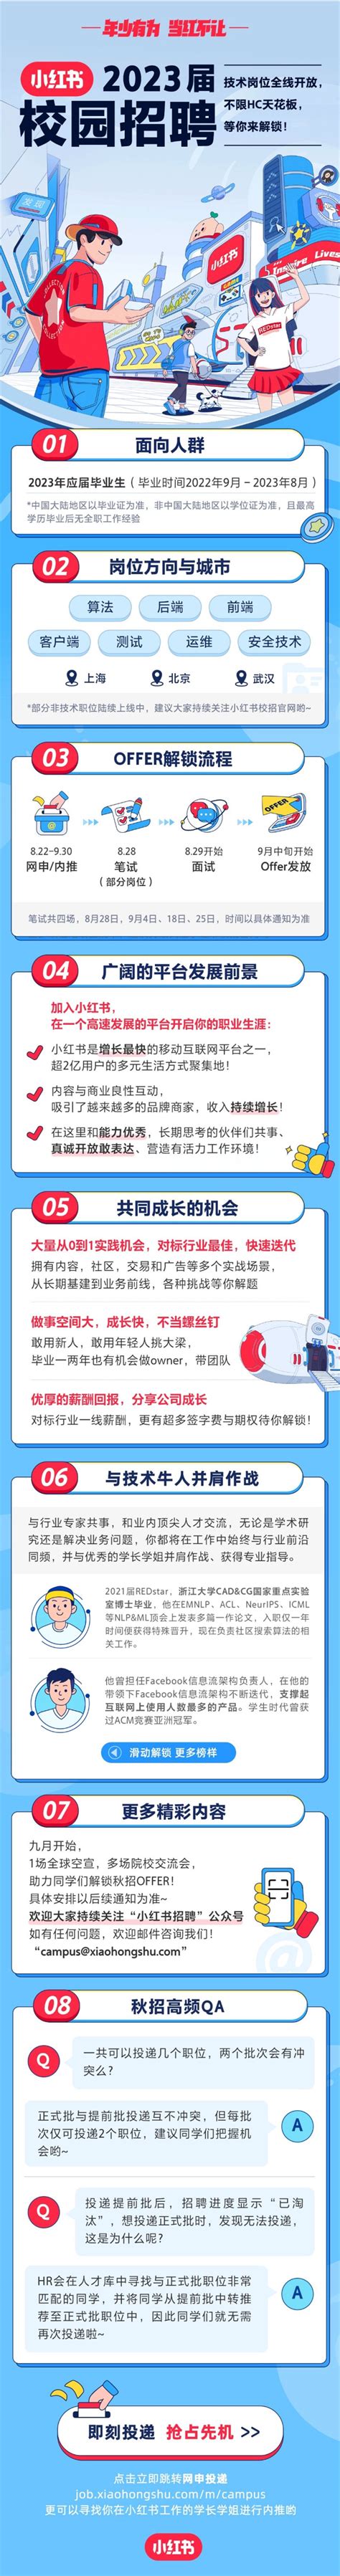 北京/上海内推 | 小红书智能创作组招聘AIGC方向业务实习生(领域,信息) - AI牛丝